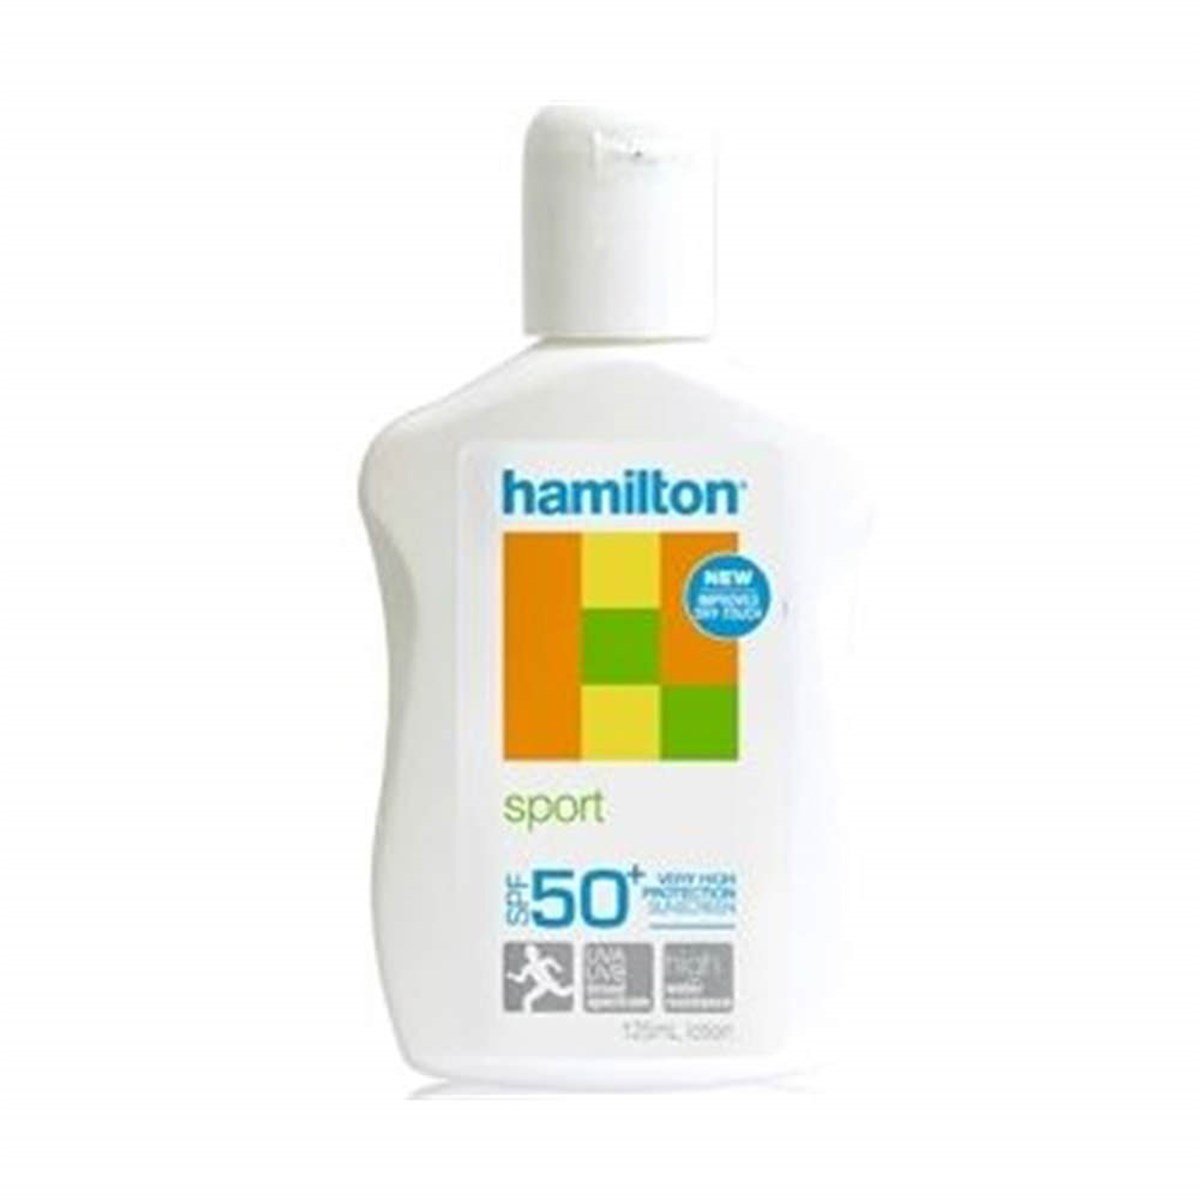 Hamilton Sportblock Losyon SPF 50 125 ml Yüz ve Vücut Güneş Losyonu